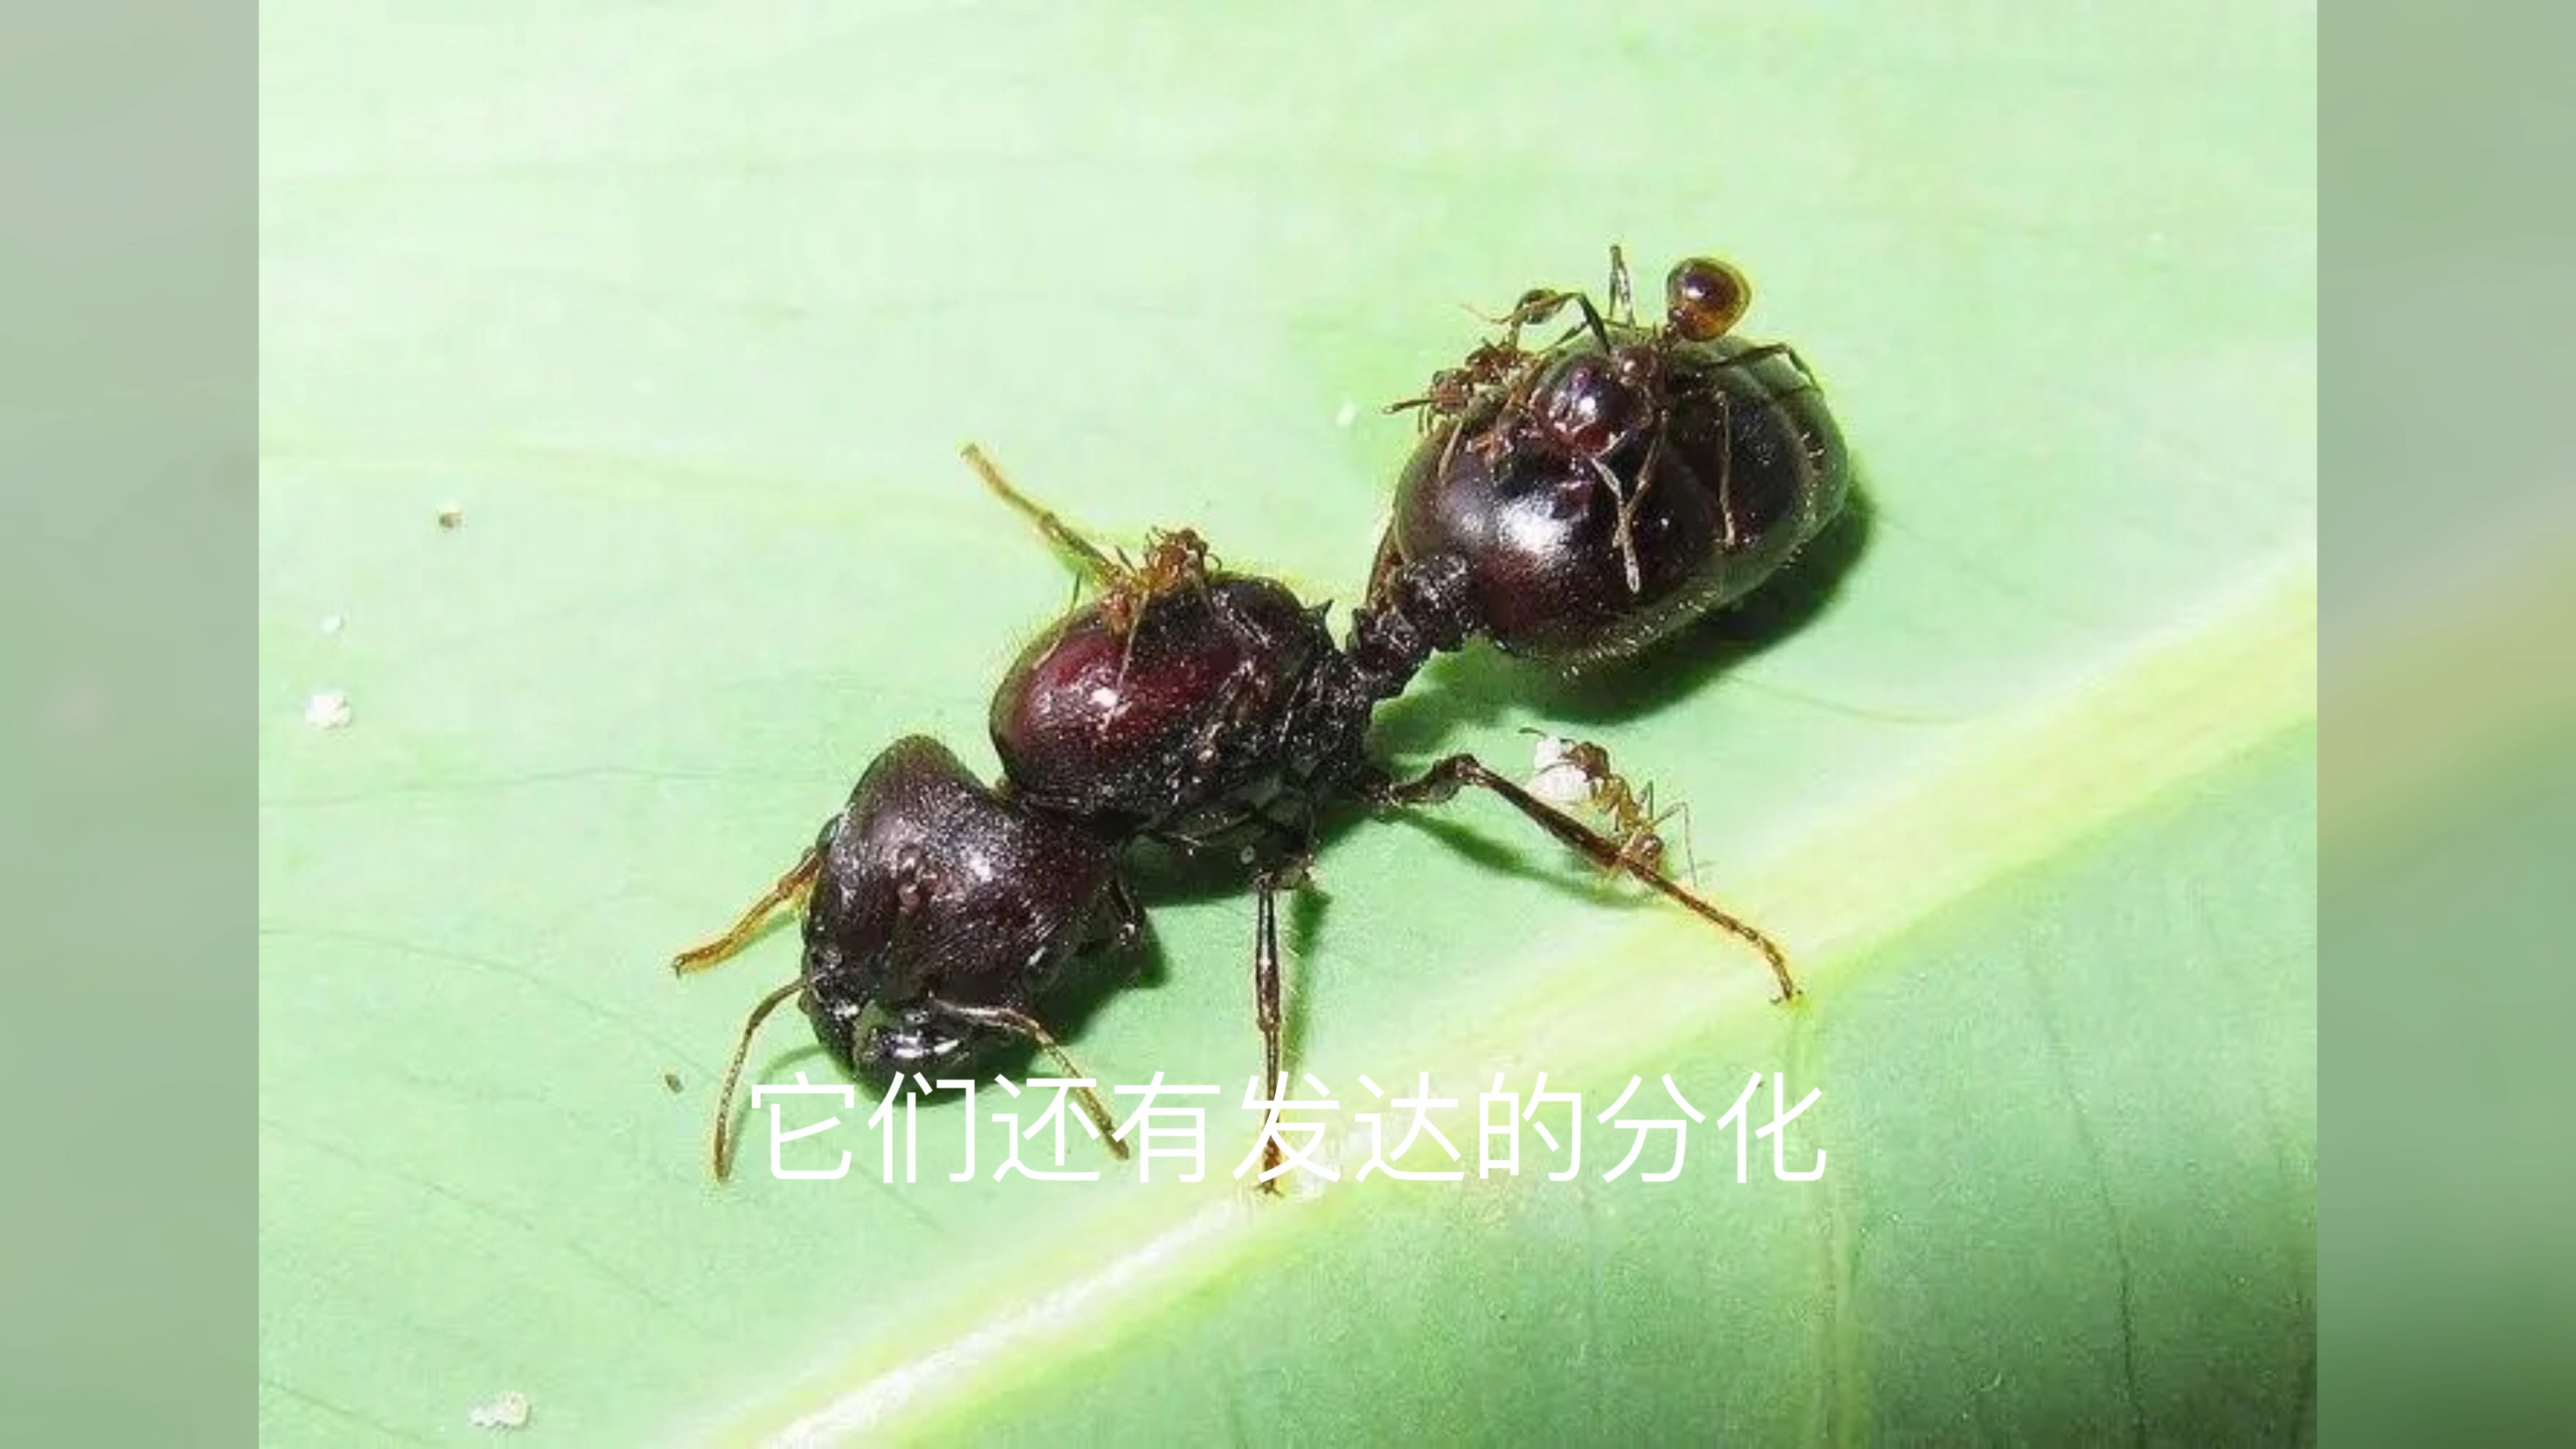 （全异）这是切叶蚁？不对！是行军蚁！还是中国的！